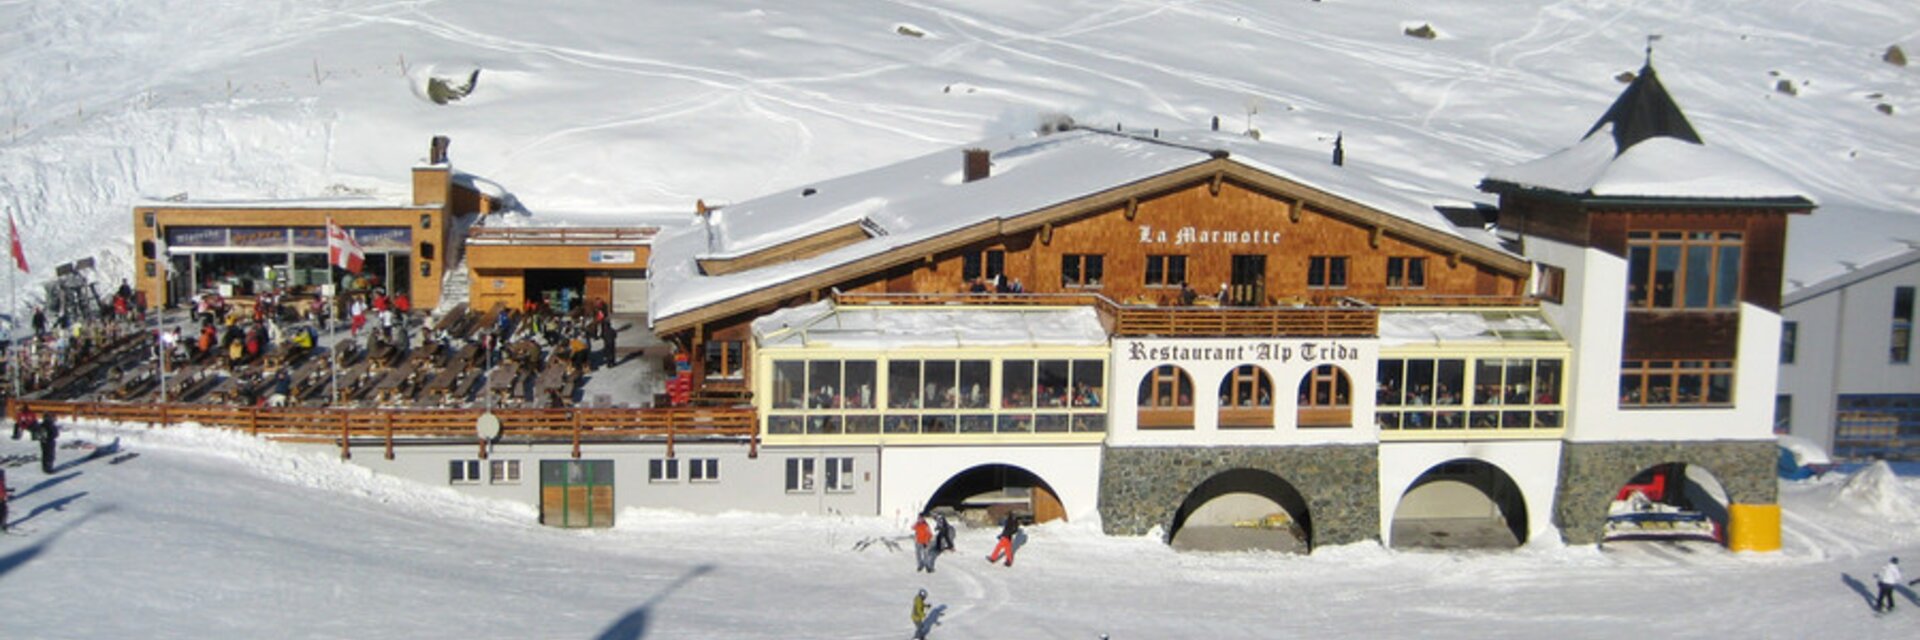 Bergrestaurant Alp Trida